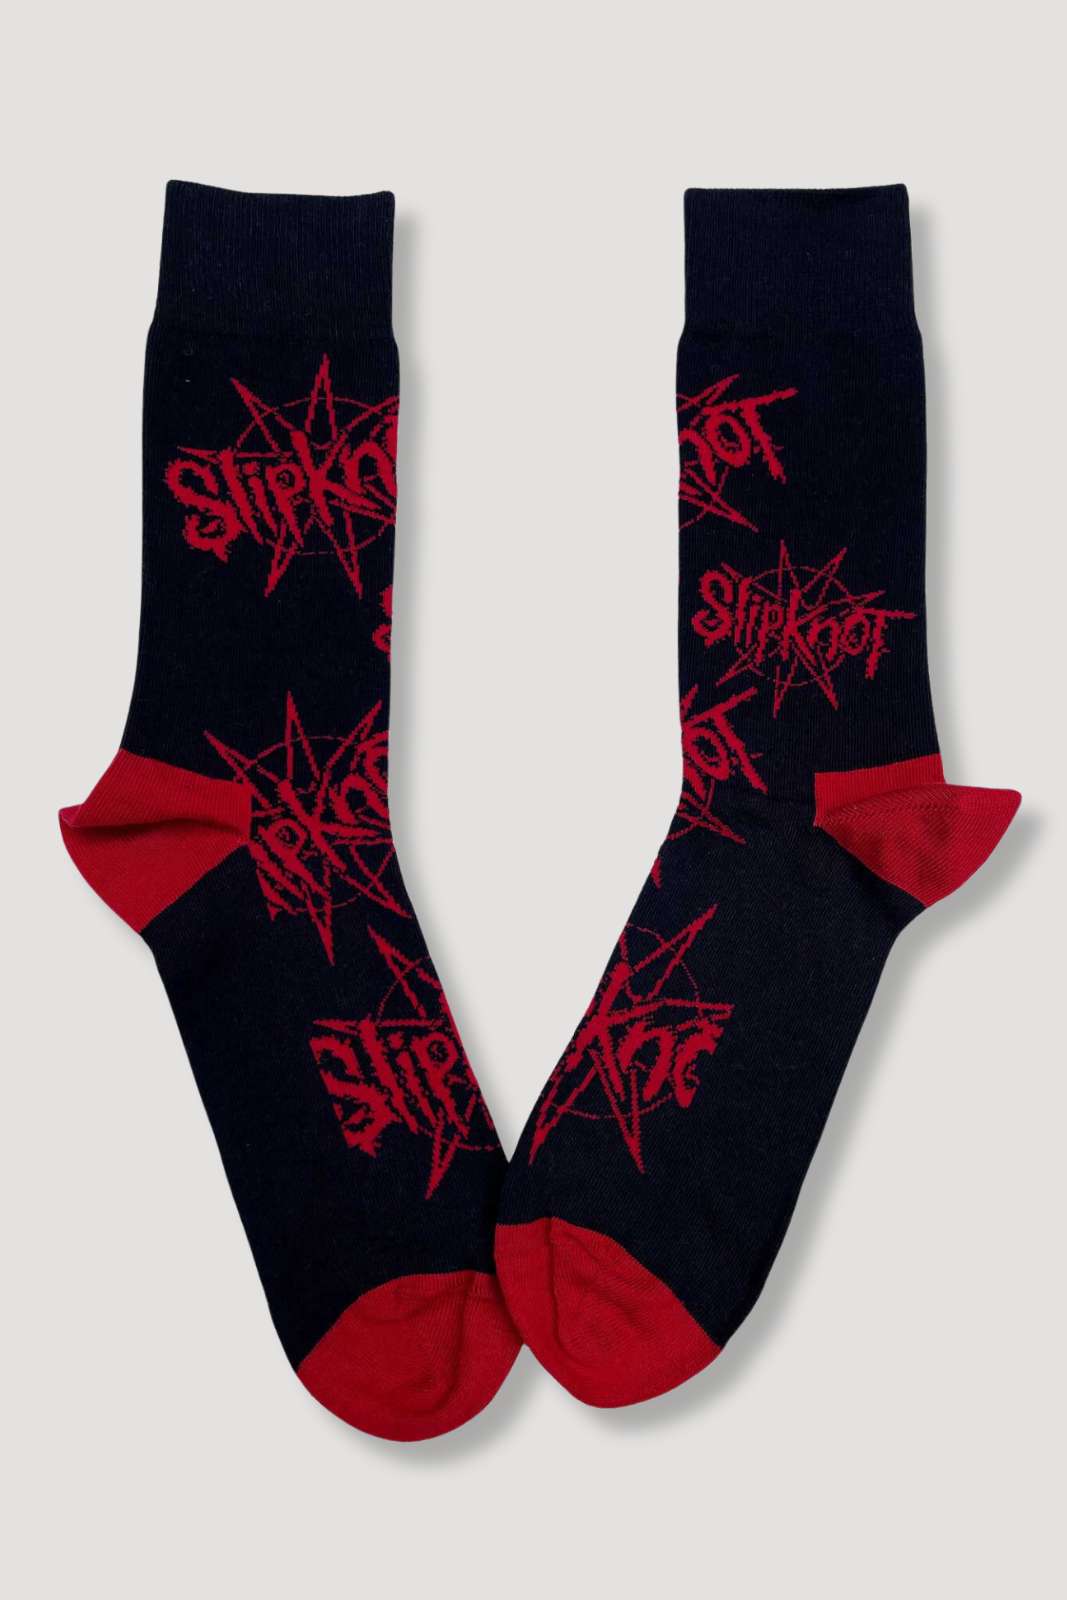 Slipknot socks